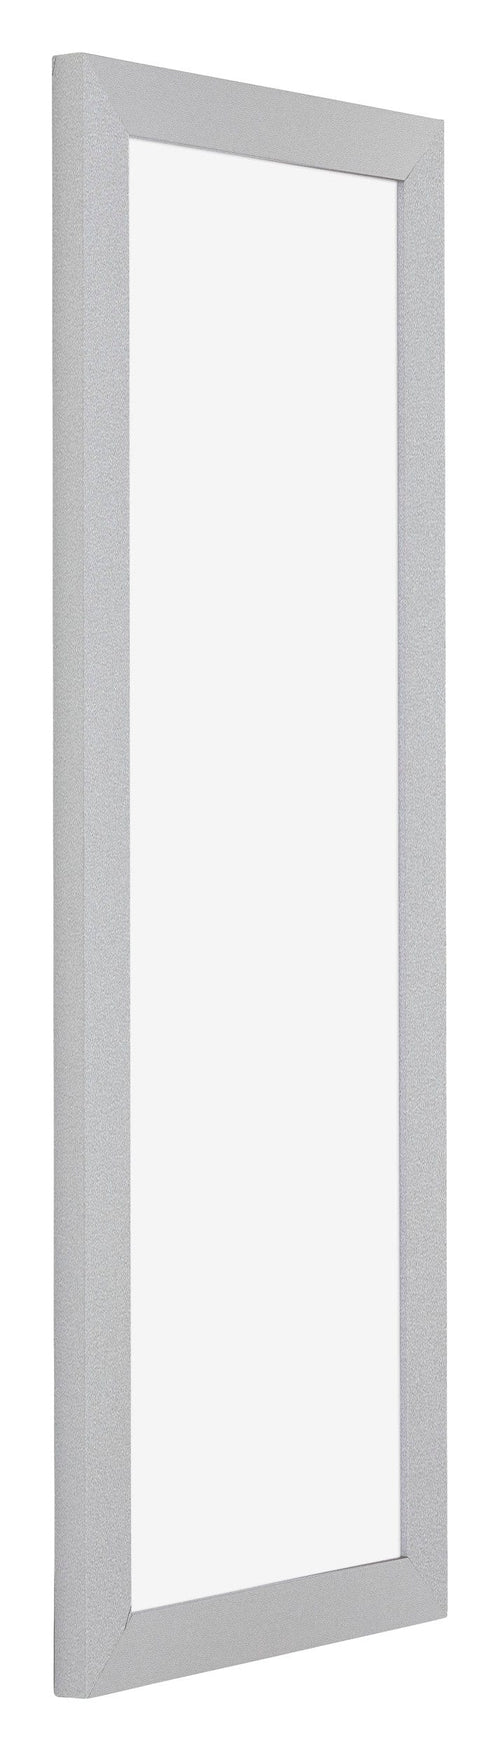 Mura MDF Photo Frame 25x75cm White High Gloss Front Oblique | Yourdecoration.com